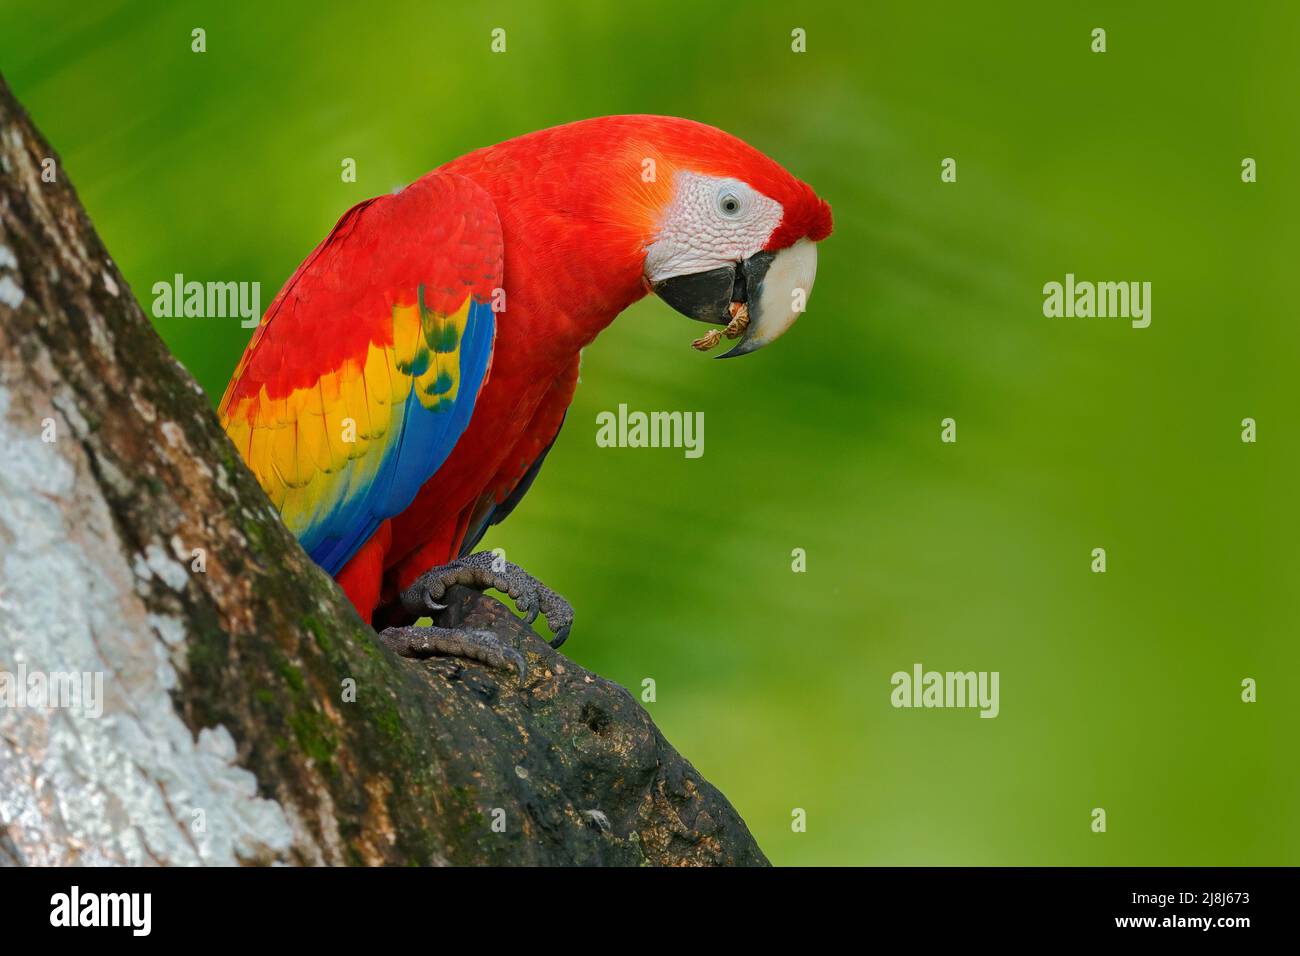 Perroquet rouge dans le trou de nid. Parrot Scarlet Macaw, Ara macao, dans la forêt tropicale vert foncé, Costa Rica, scène de la faune de la nature tropique. Oiseau rouge i Banque D'Images